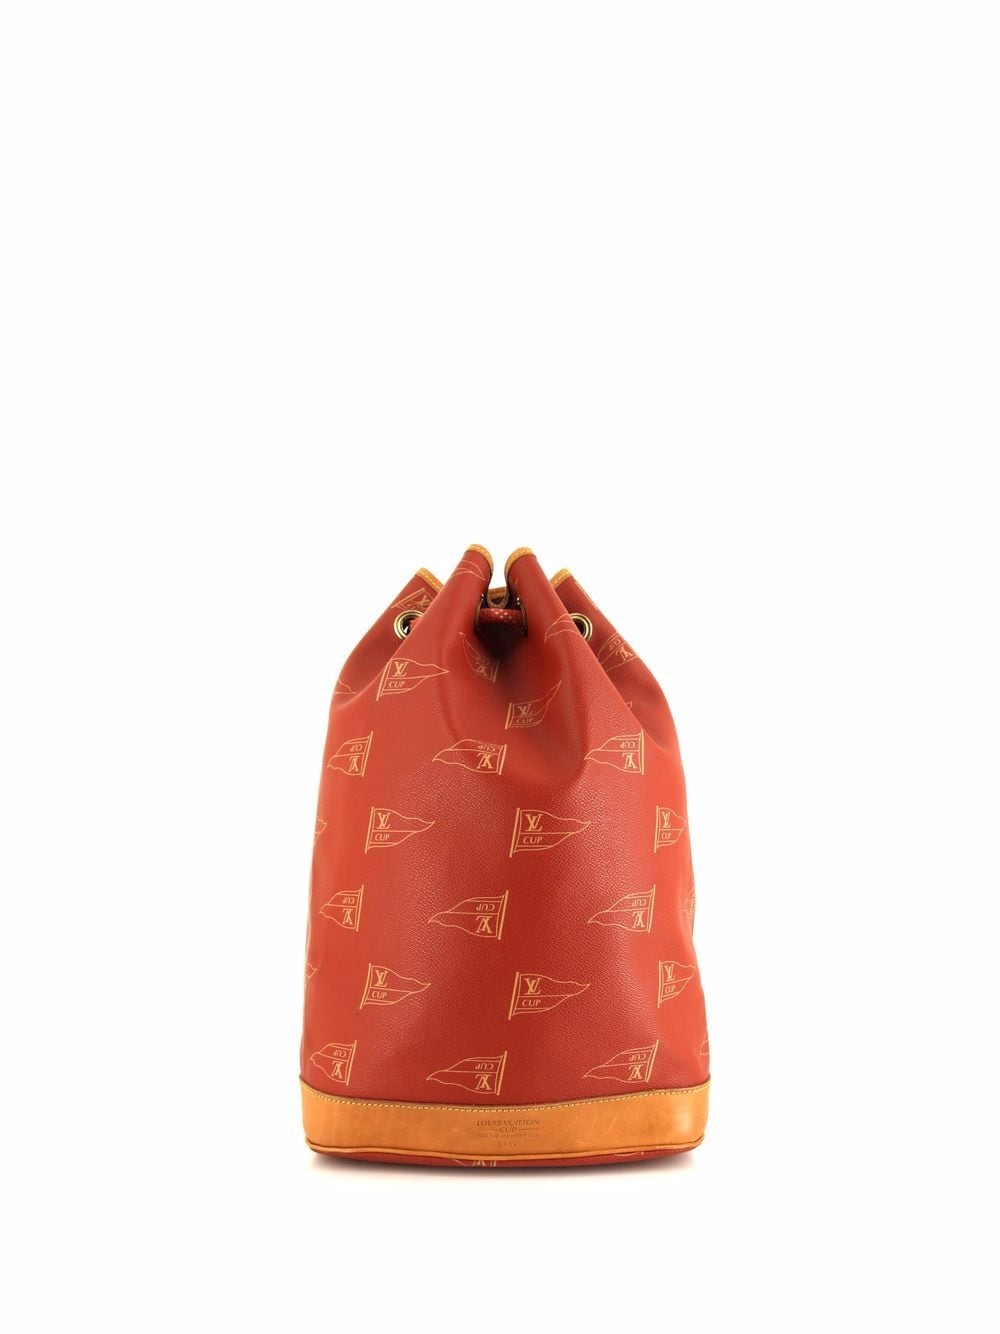 Louis Vuitton Saint Tropez Red Canvas Shoulder Bag (Pre-Owned)